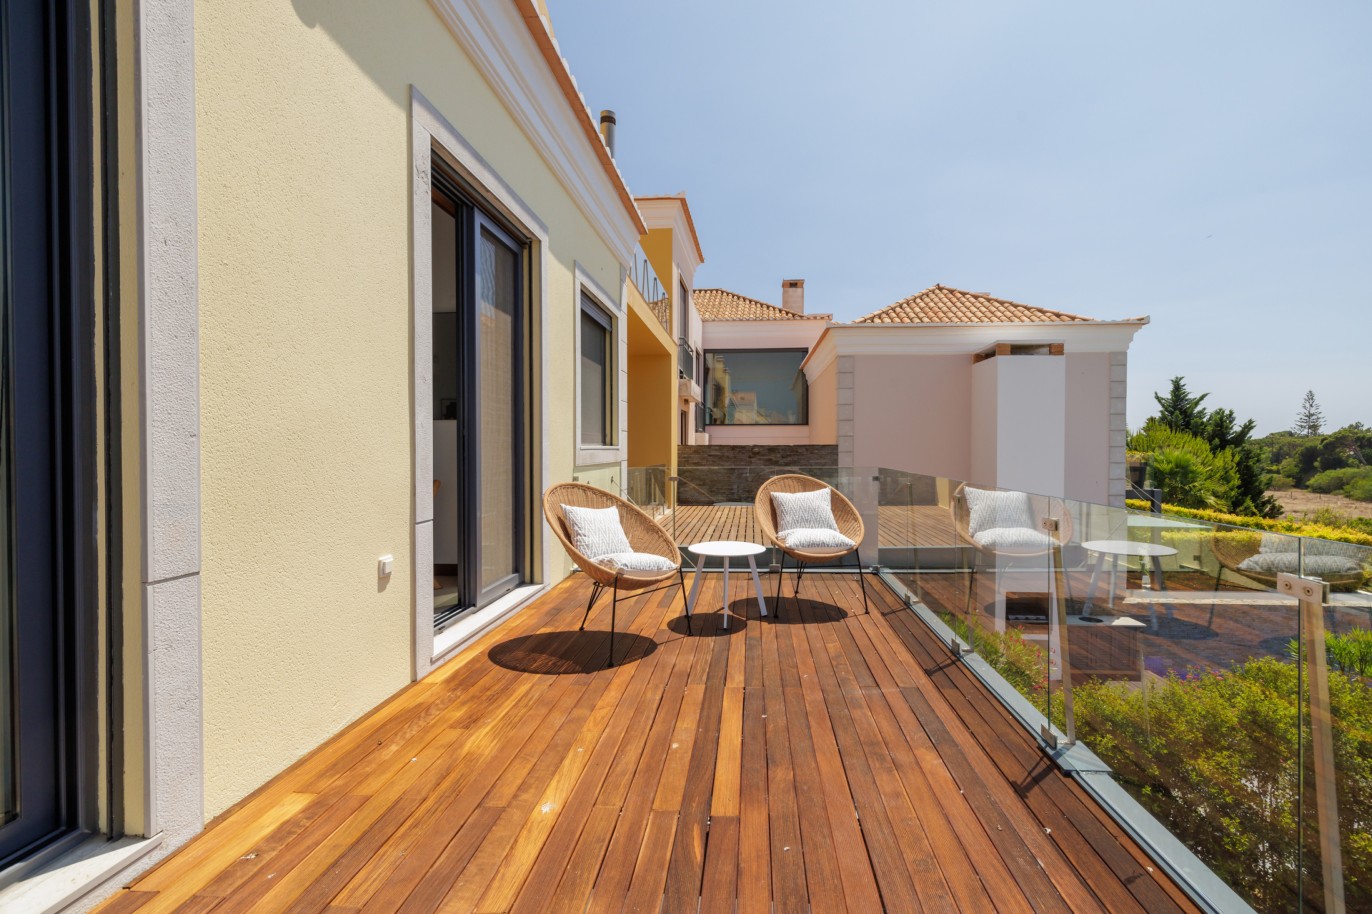 2+1 bedroom villa with pool, for sale in Vale do Lobo, Algarve_232746